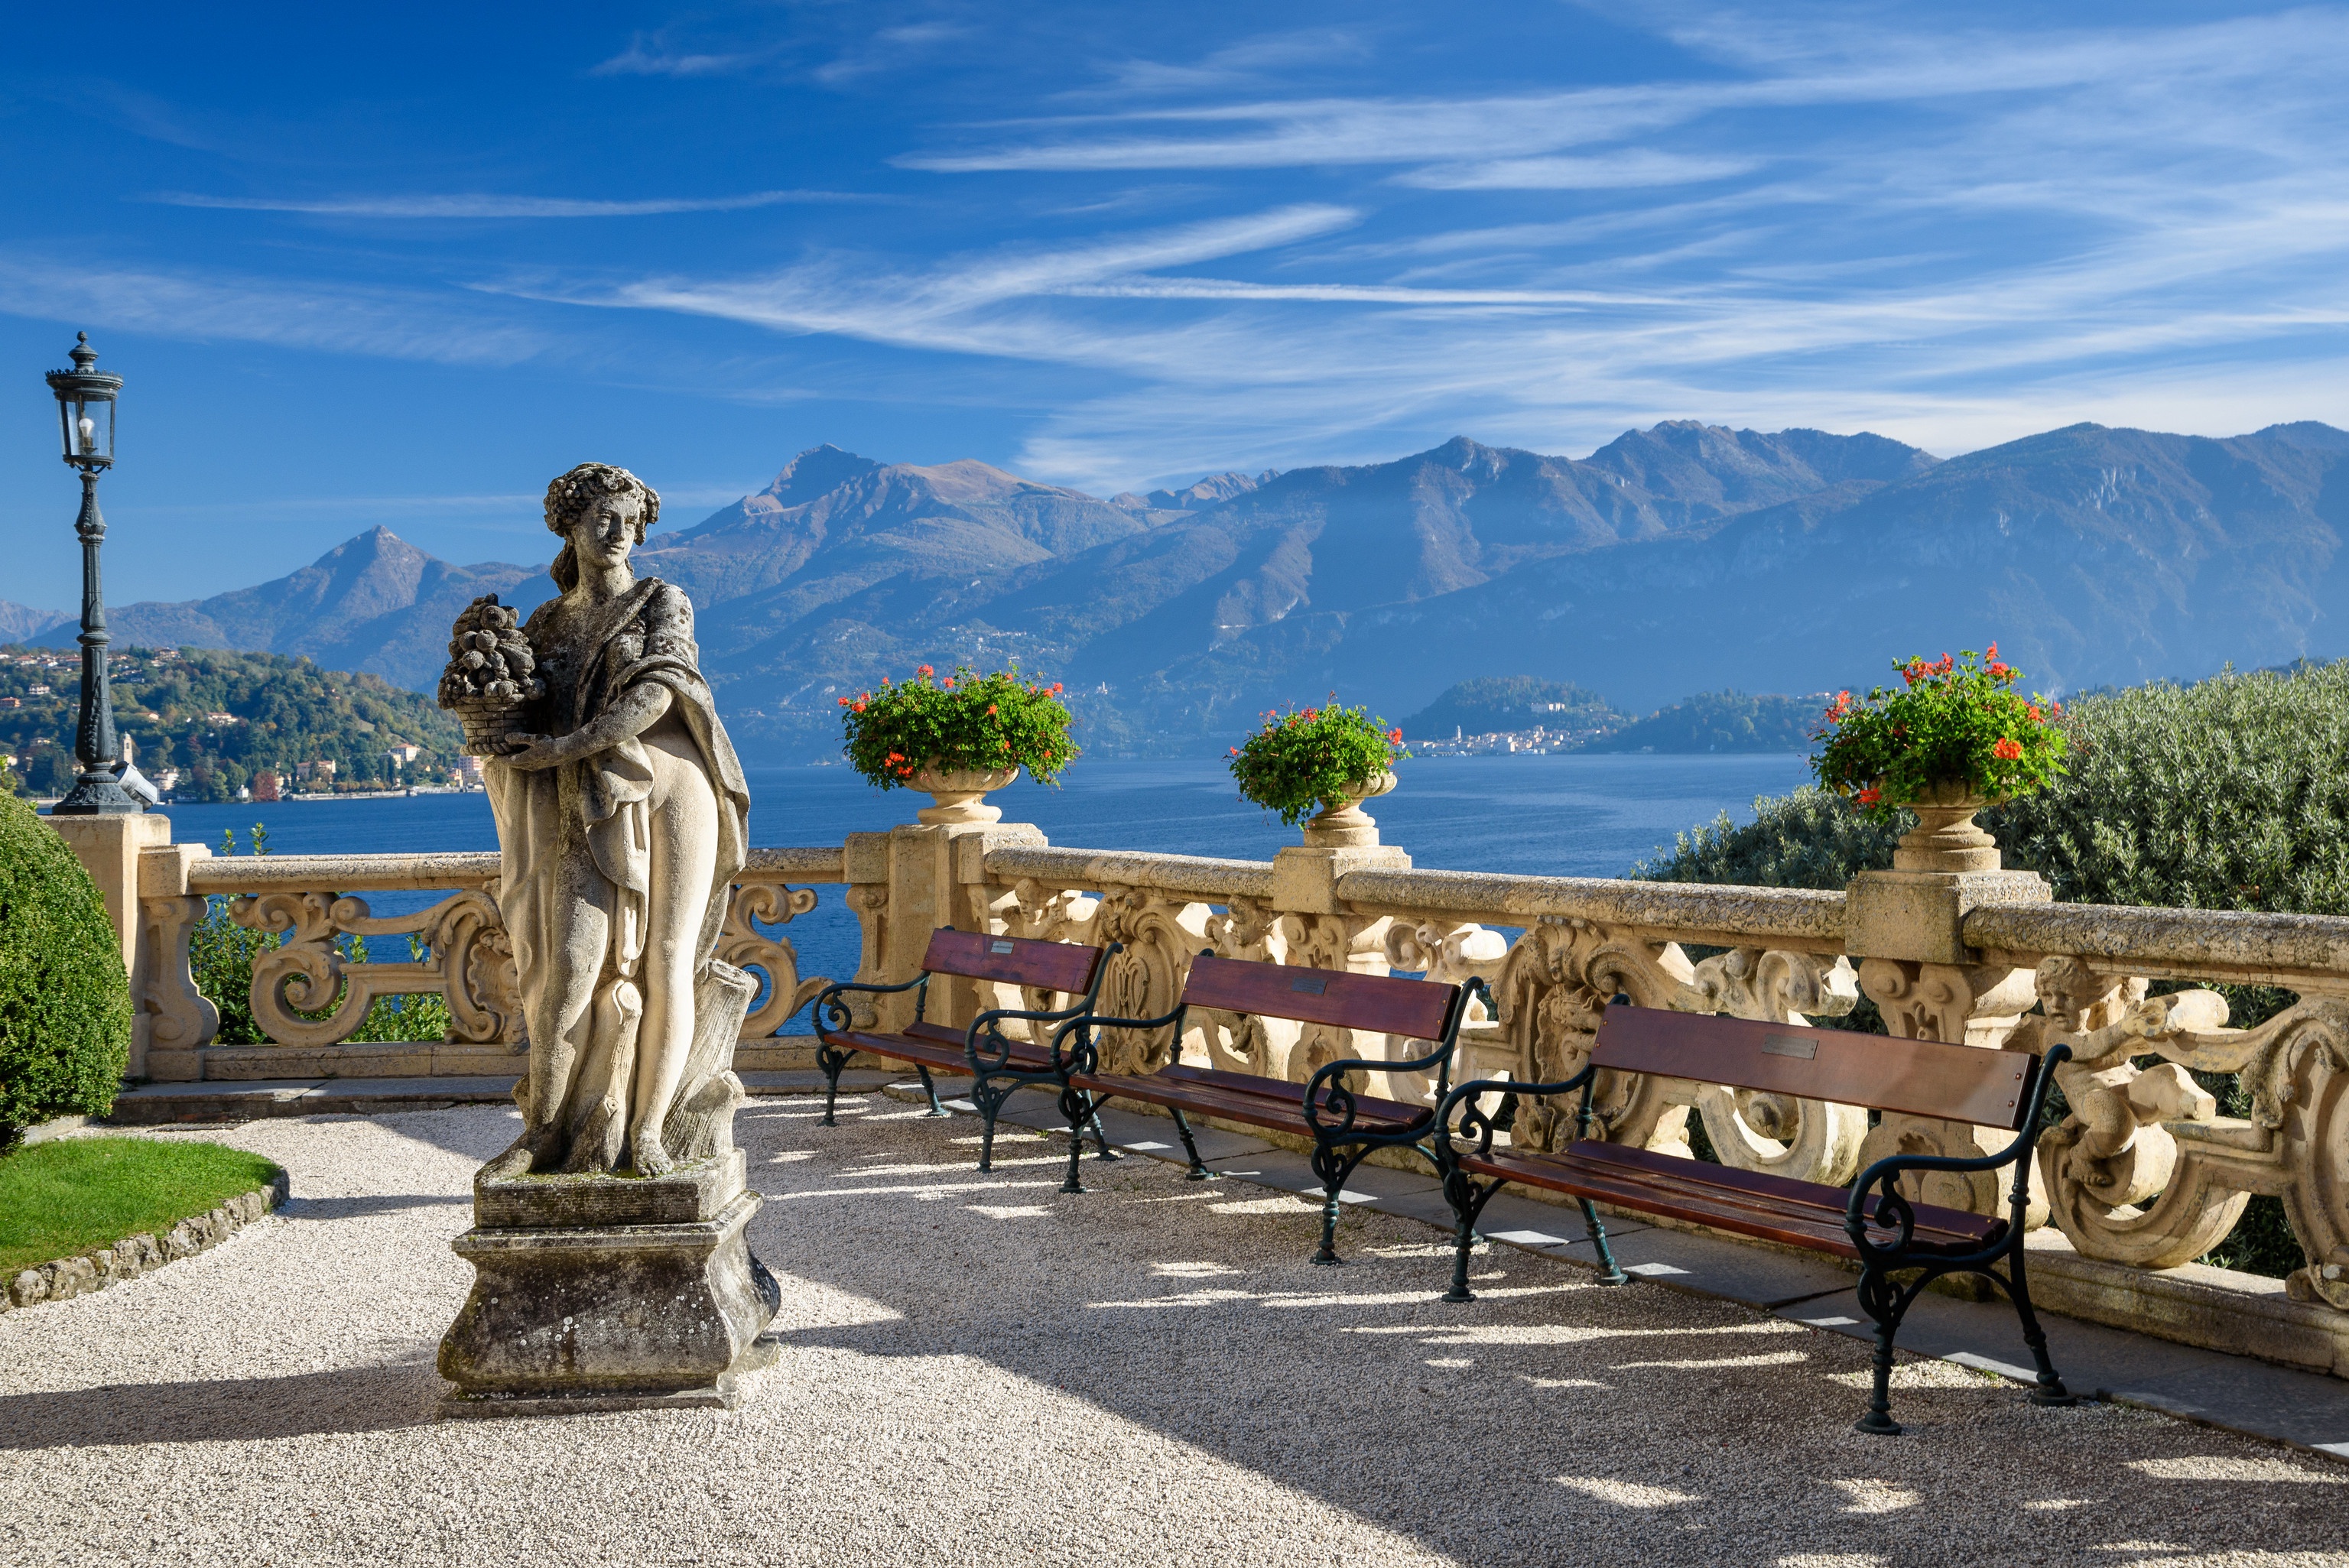 Italy Lake Como Bench Villa Balbianello 3072x2051